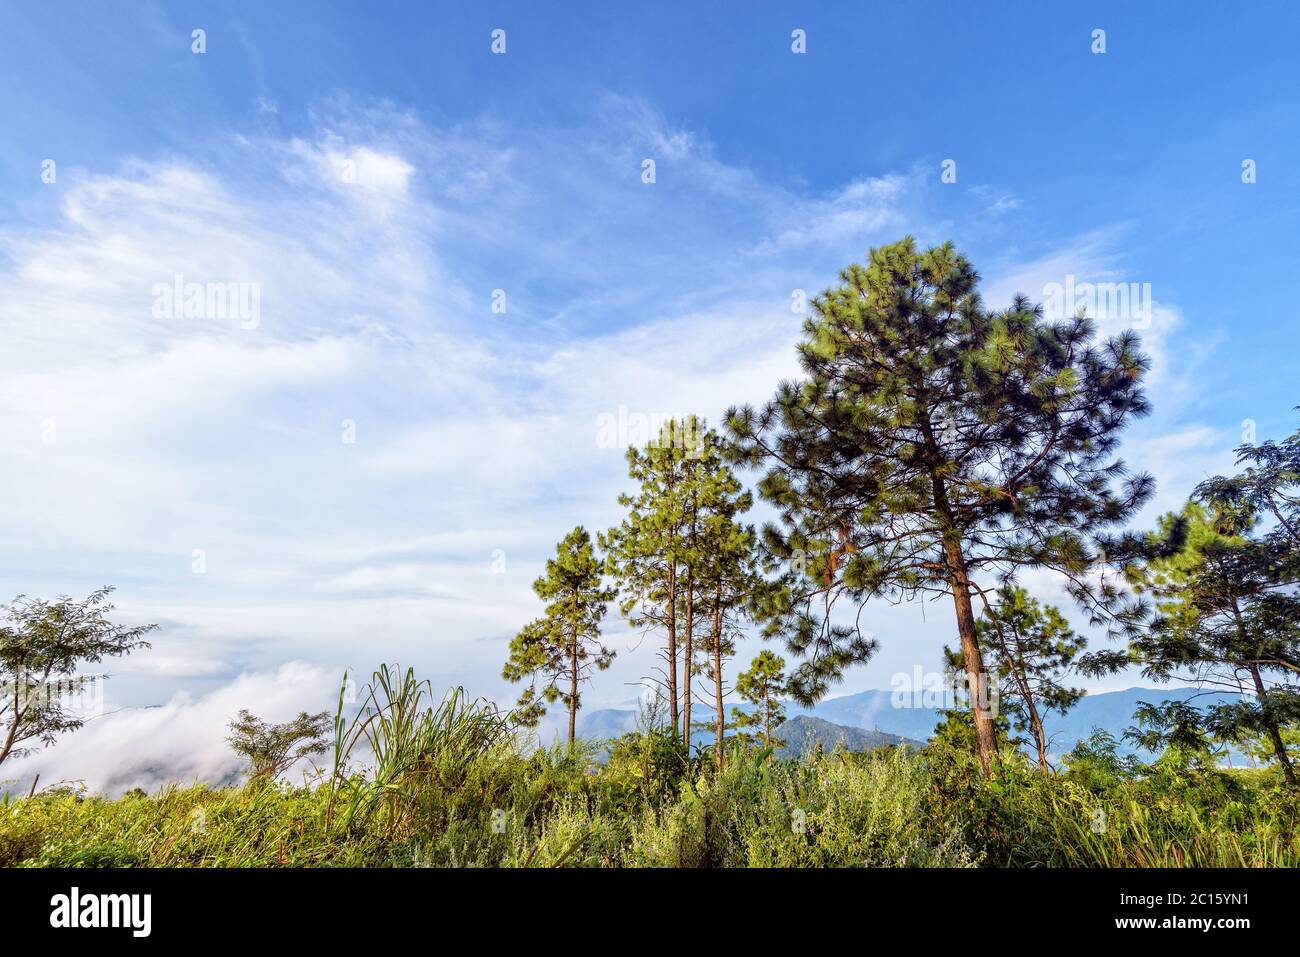 Pine trees on the mountain Stock Photo